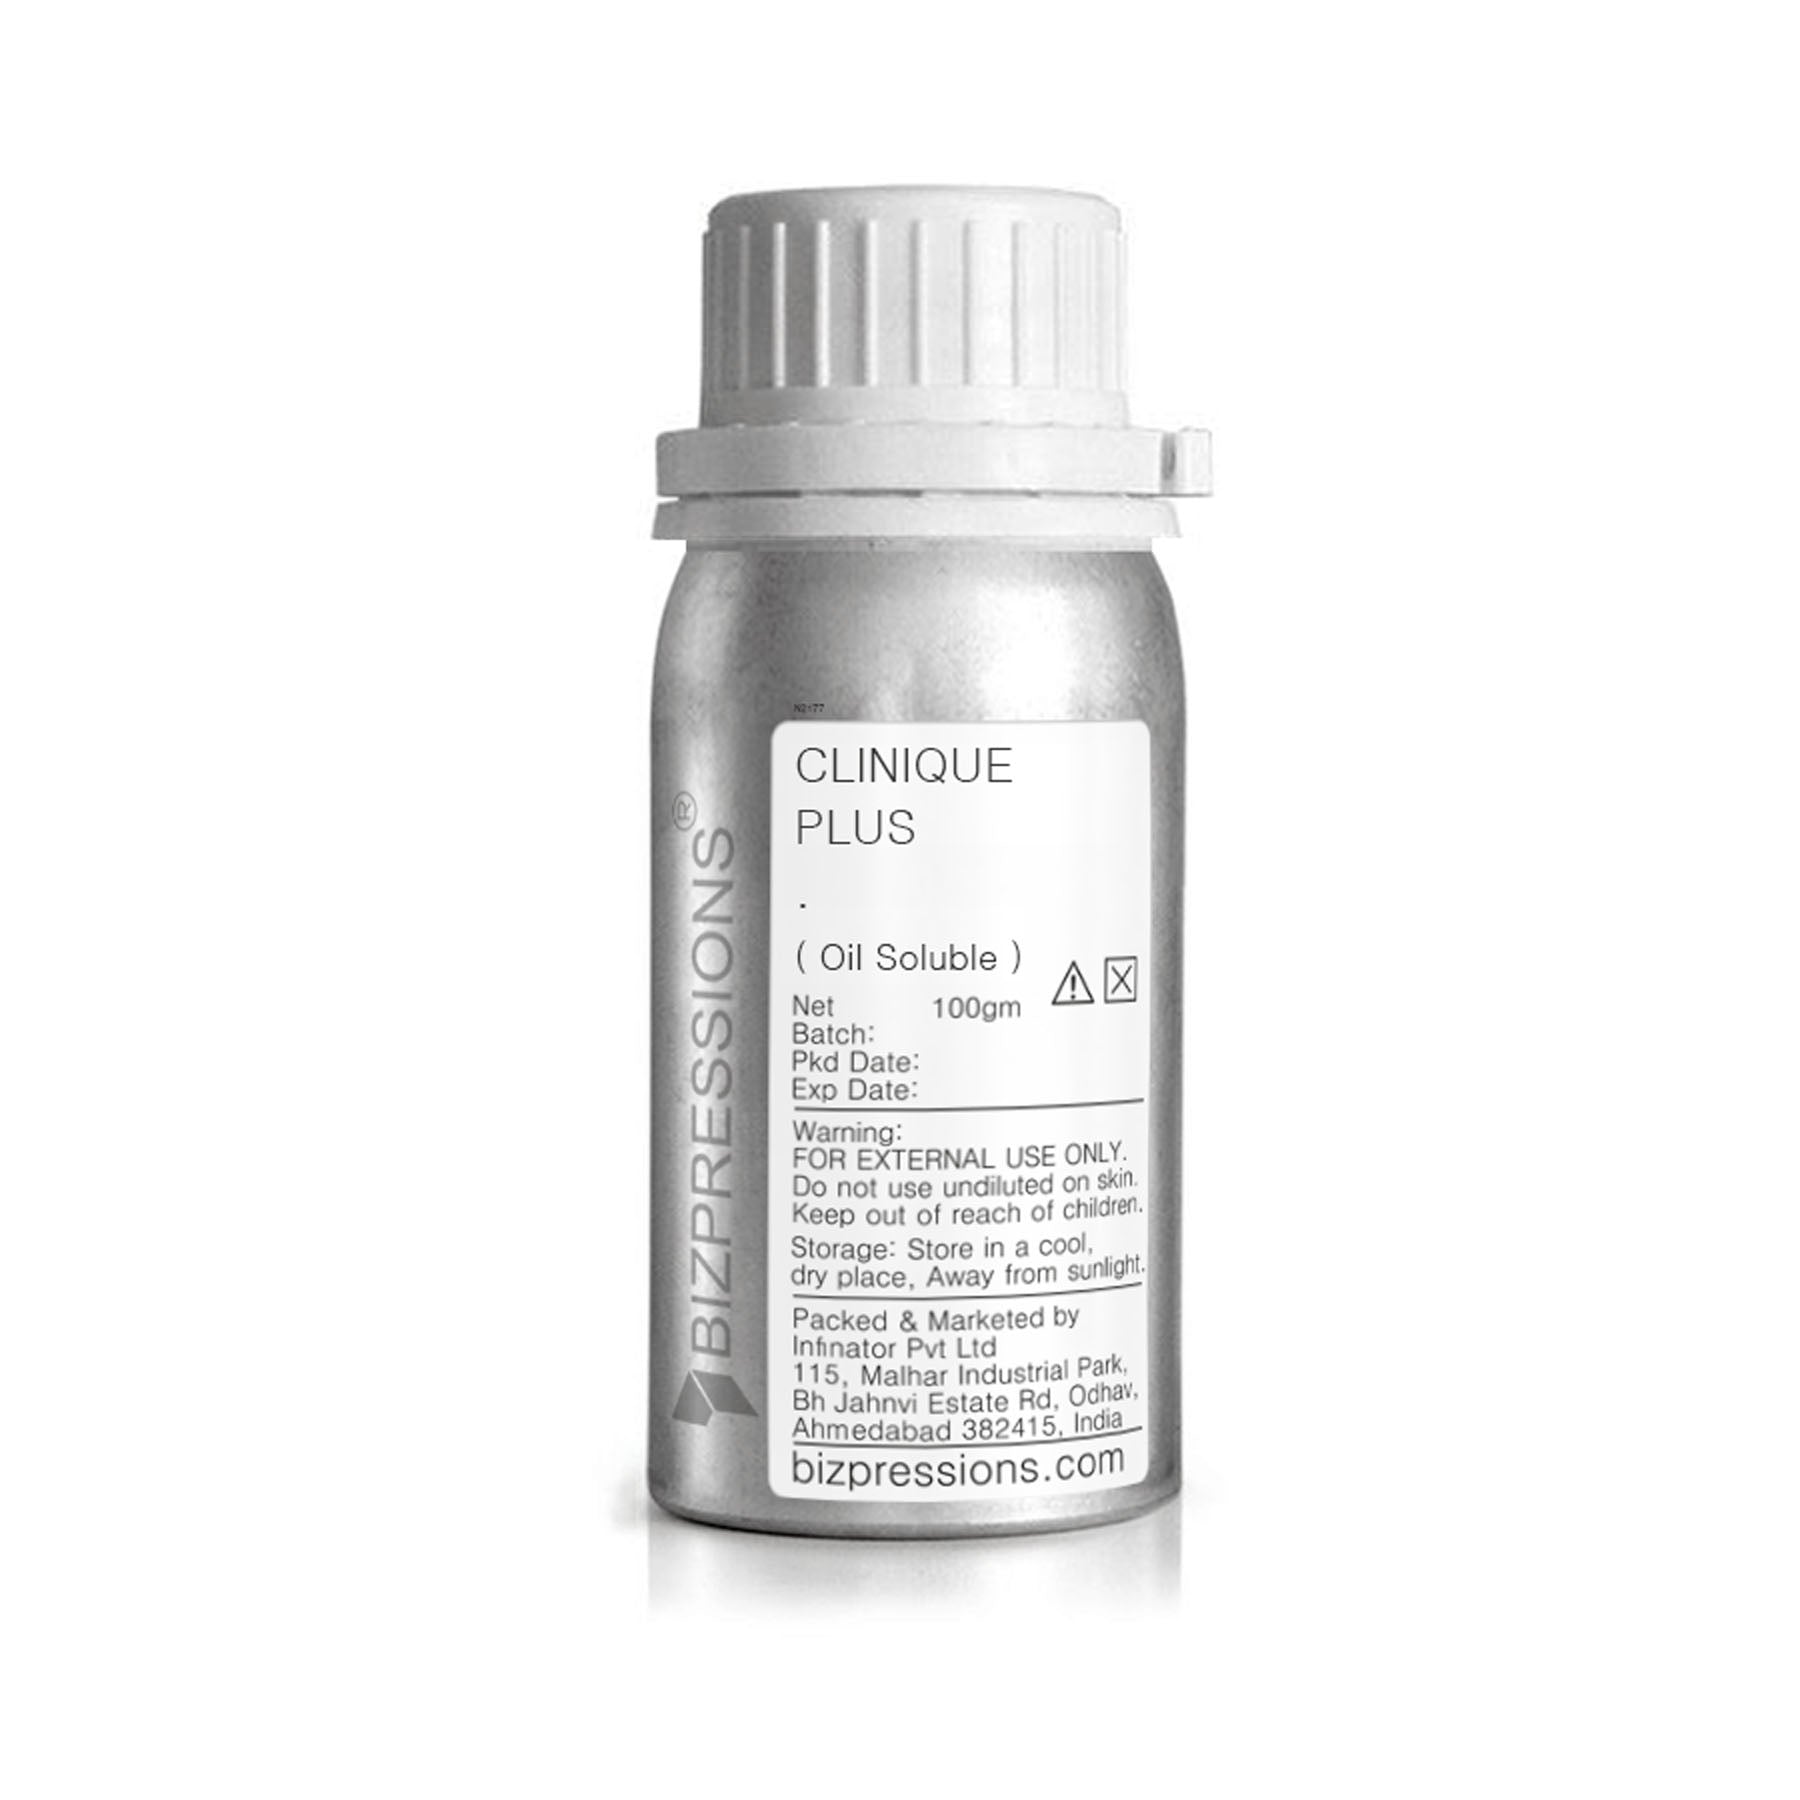 CLINIQUE PLUS - Fragrance ( Oil Soluble ) - 100 gm